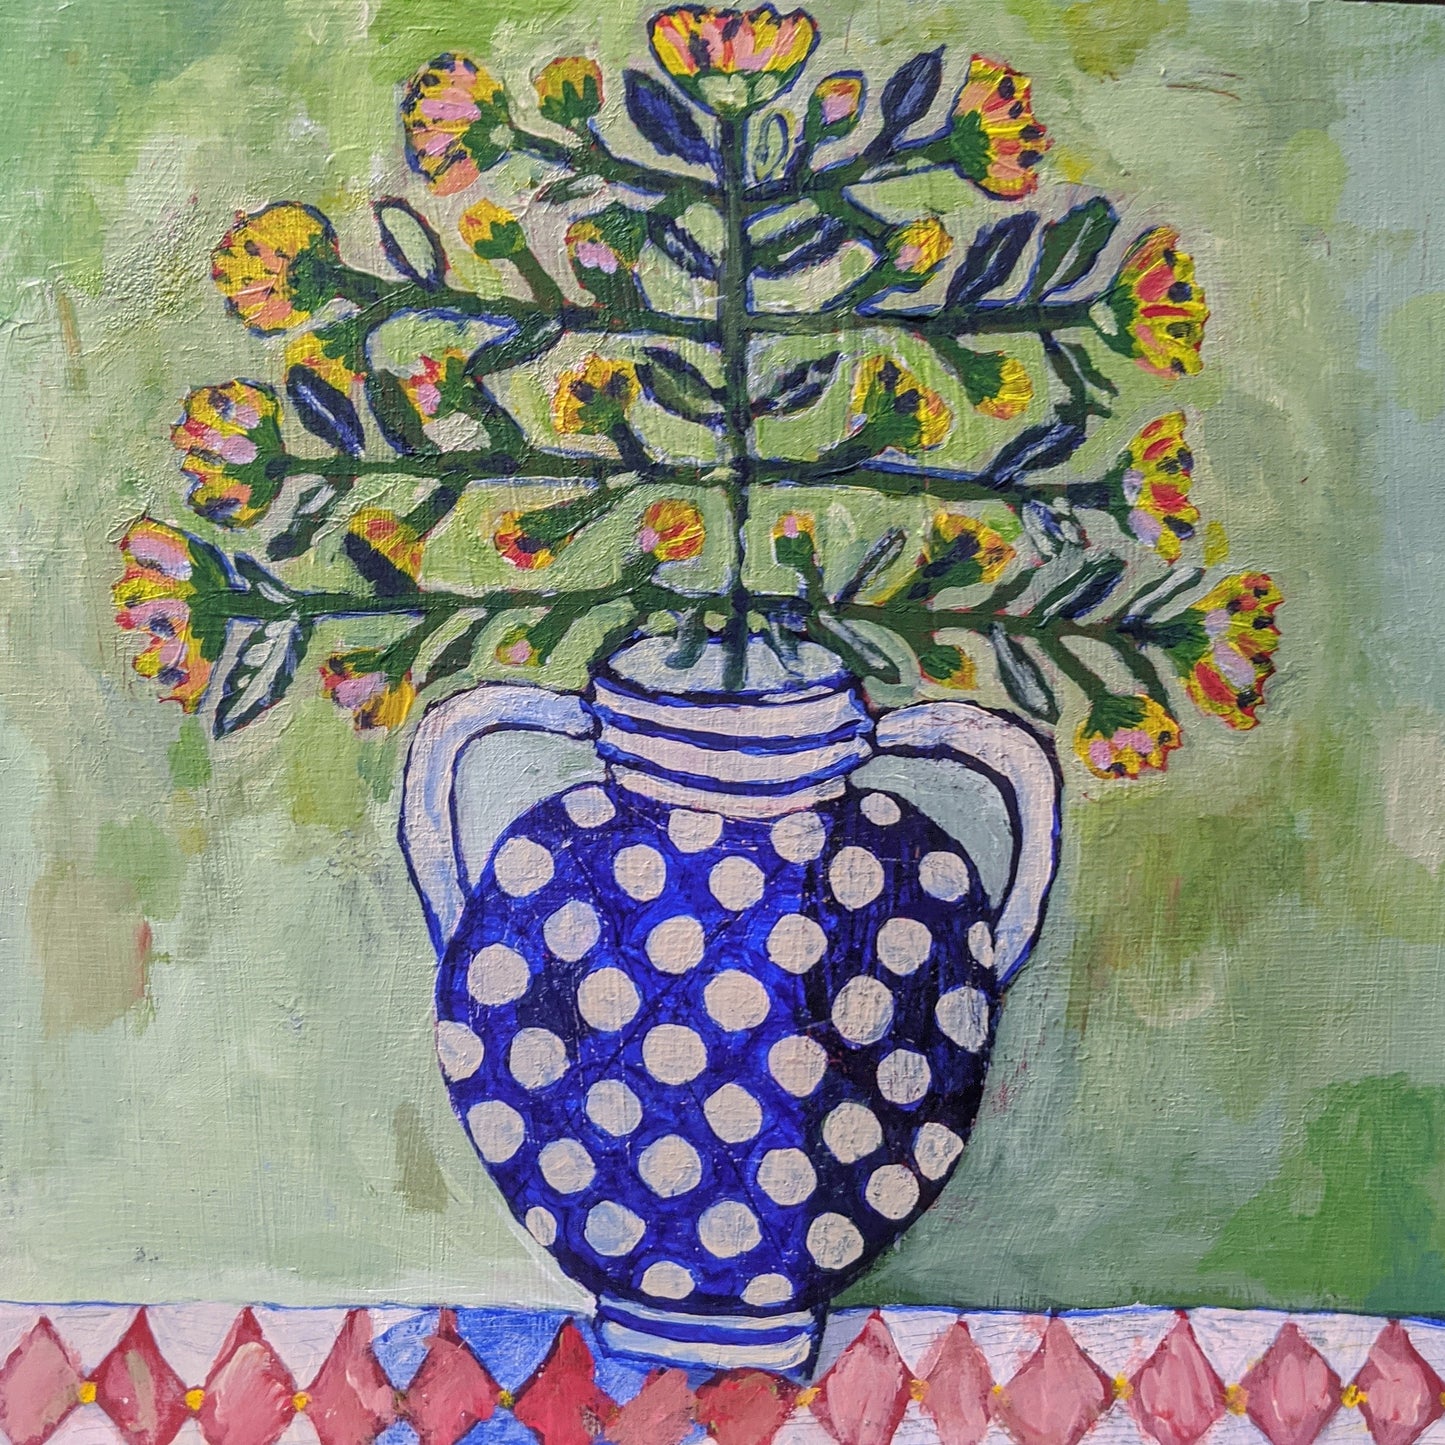 "Polish Vase and wild flowers"